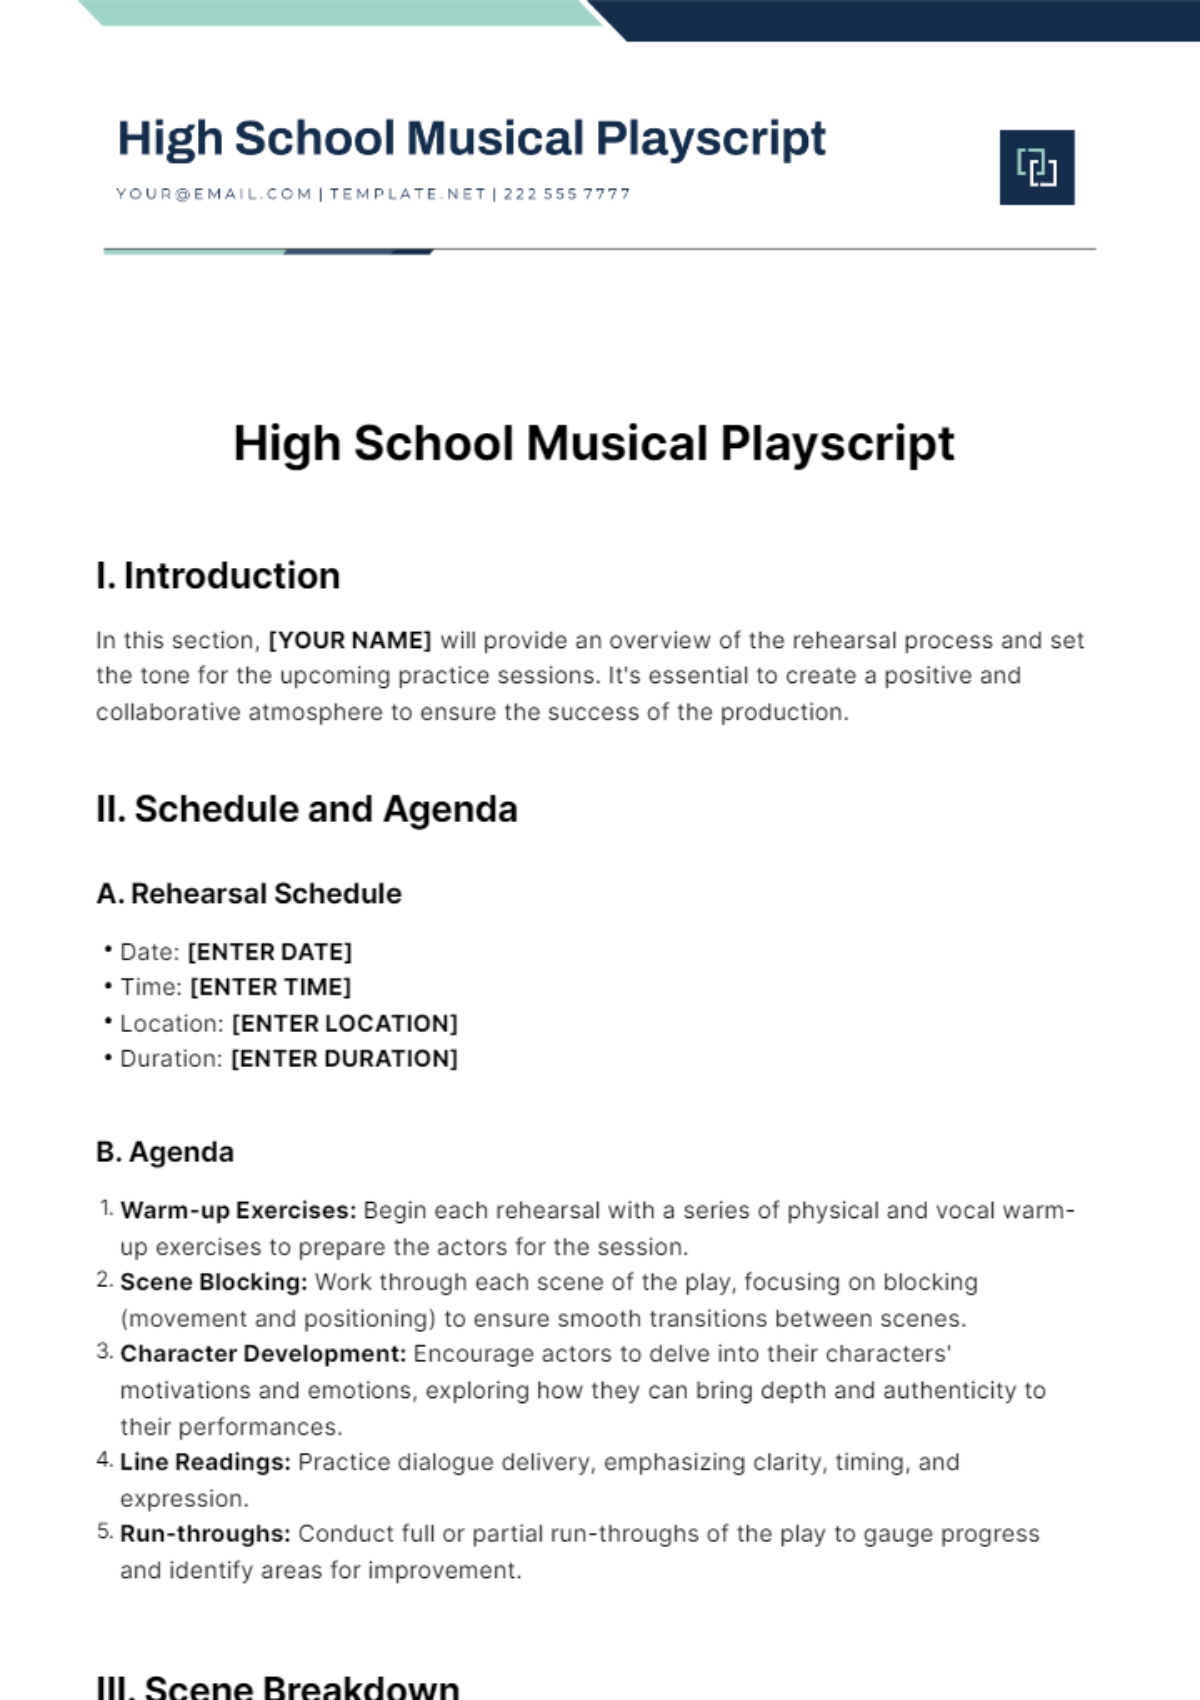 High School Musical Playscript Template